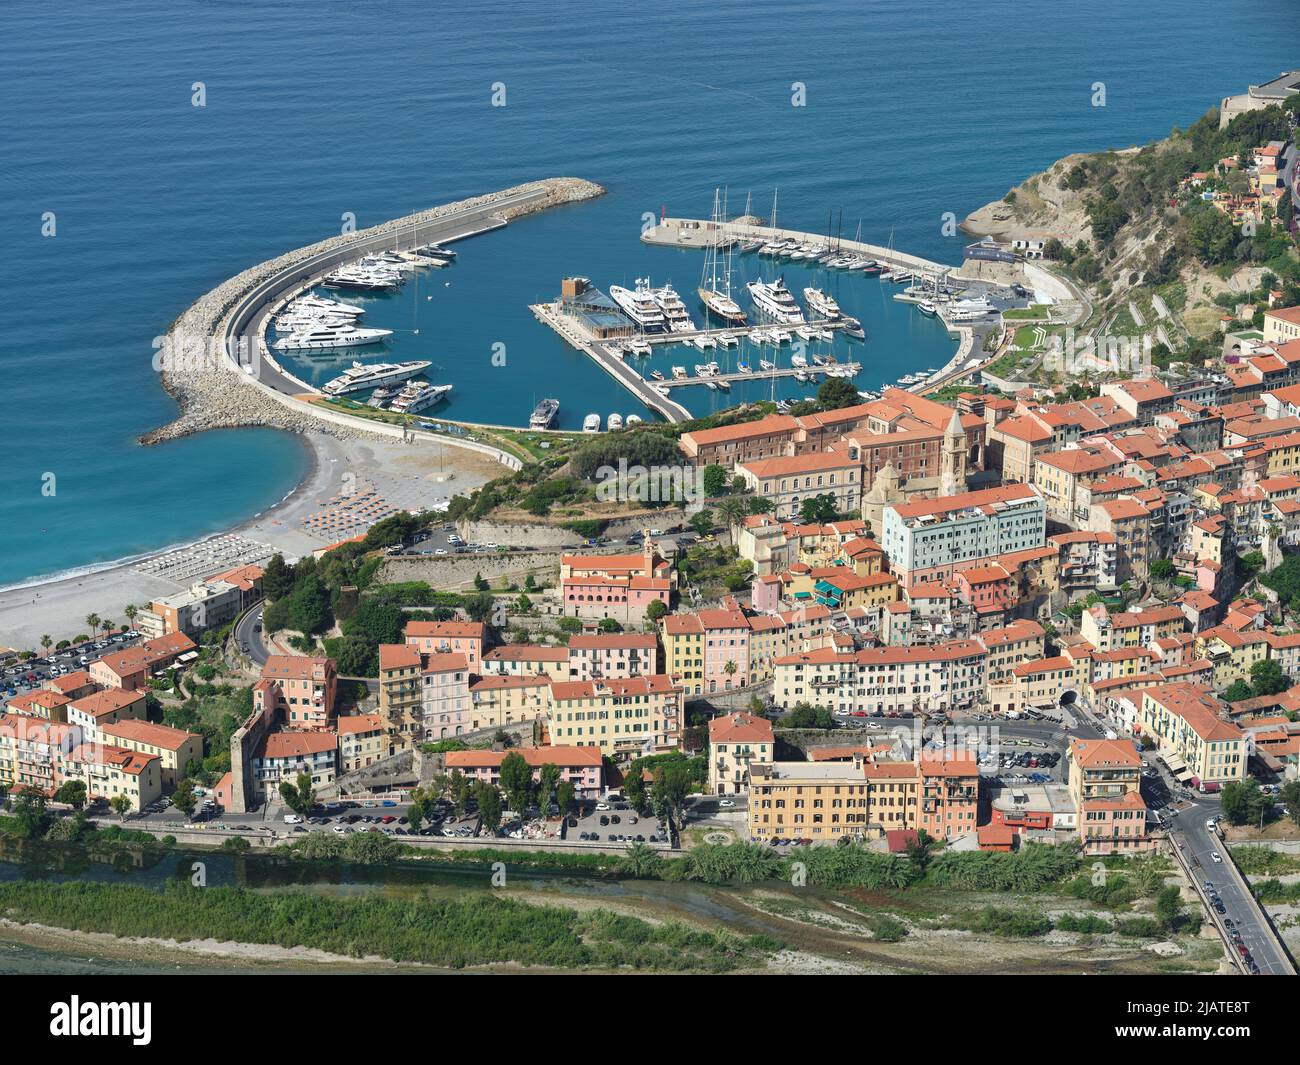 VISTA AÉREA. La ciudad medieval de Alta Ventimiglia y el nuevo (inaugurado en 2021) puerto deportivo con sus superyates. Ventimiglia, Liguria, Italia. Foto de stock